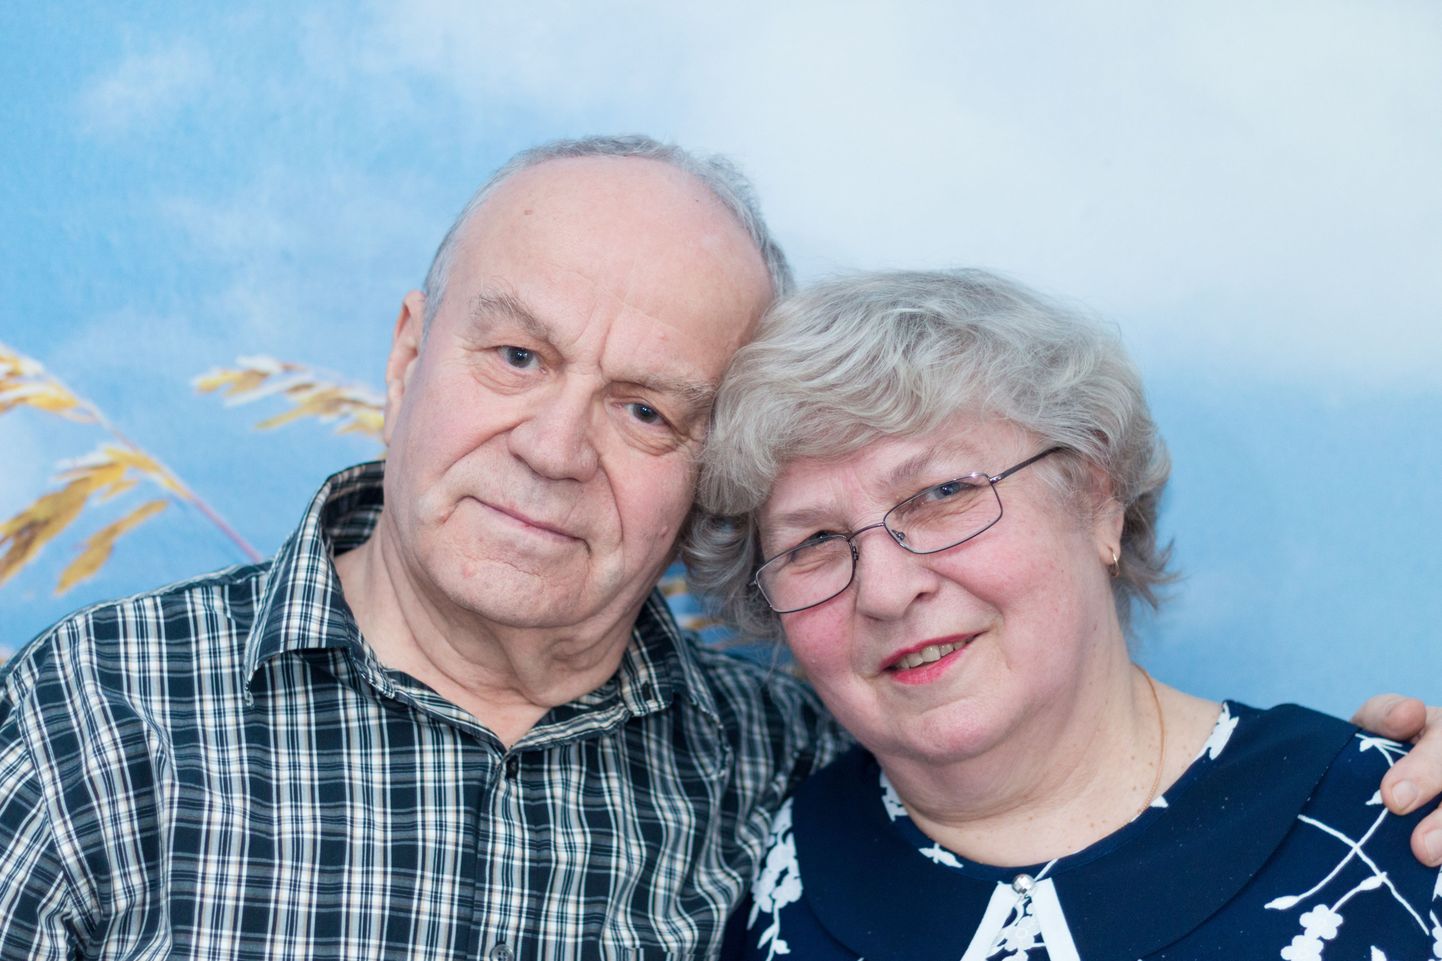 Just täna 50 aastat tagasi pidasid oma pulmapidu Sirje ja Vladimir Koriškevitš. Kuigi elu pole neid alati hellitanud, ei kahetse nad poolt sajandit koos veedetud aega.